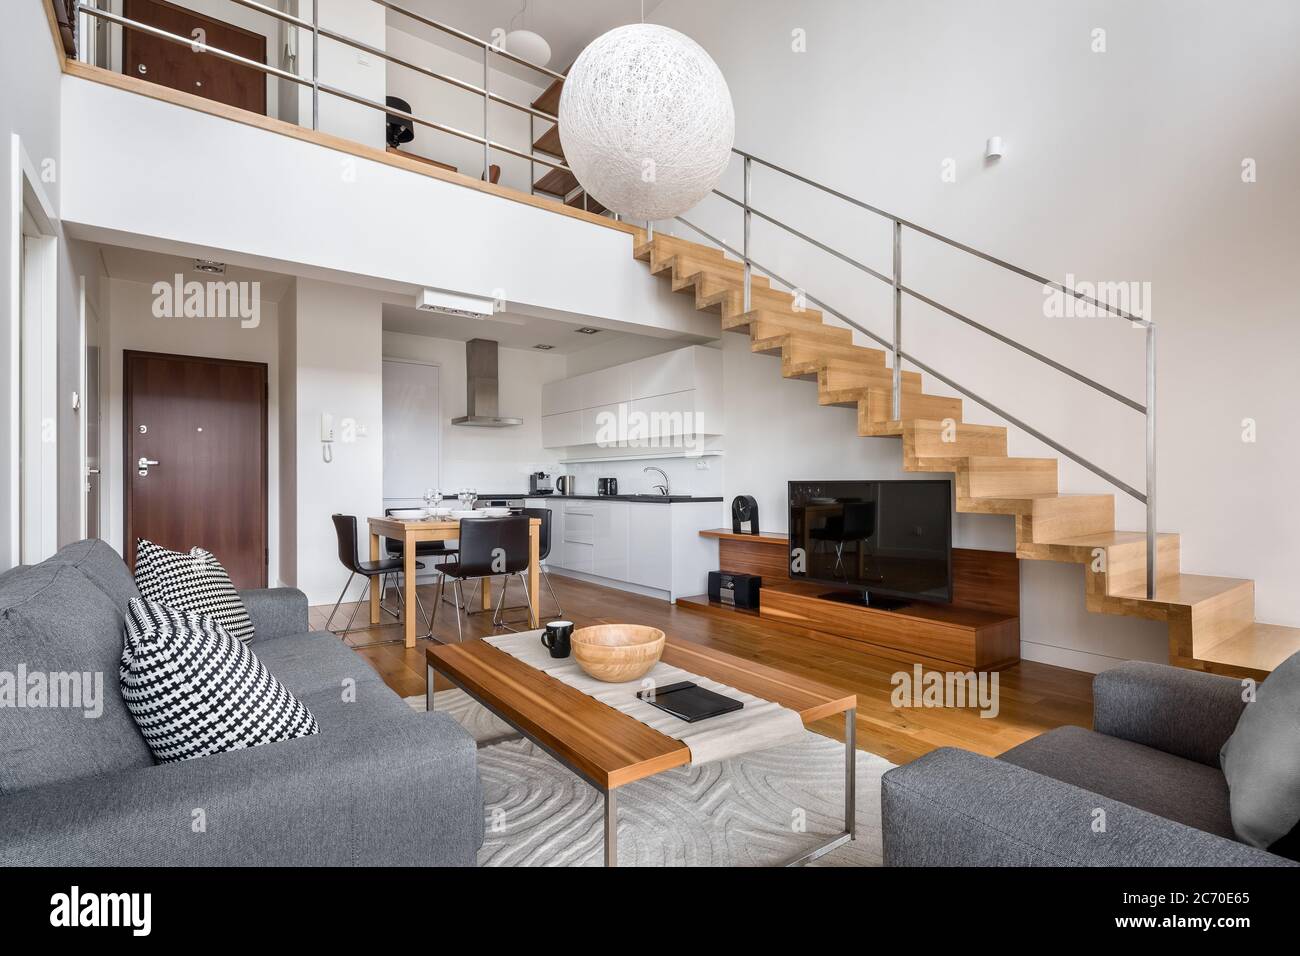 Appartement moderne de deux étages avec escalier en bois et salon donnant sur la cuisine Banque D'Images